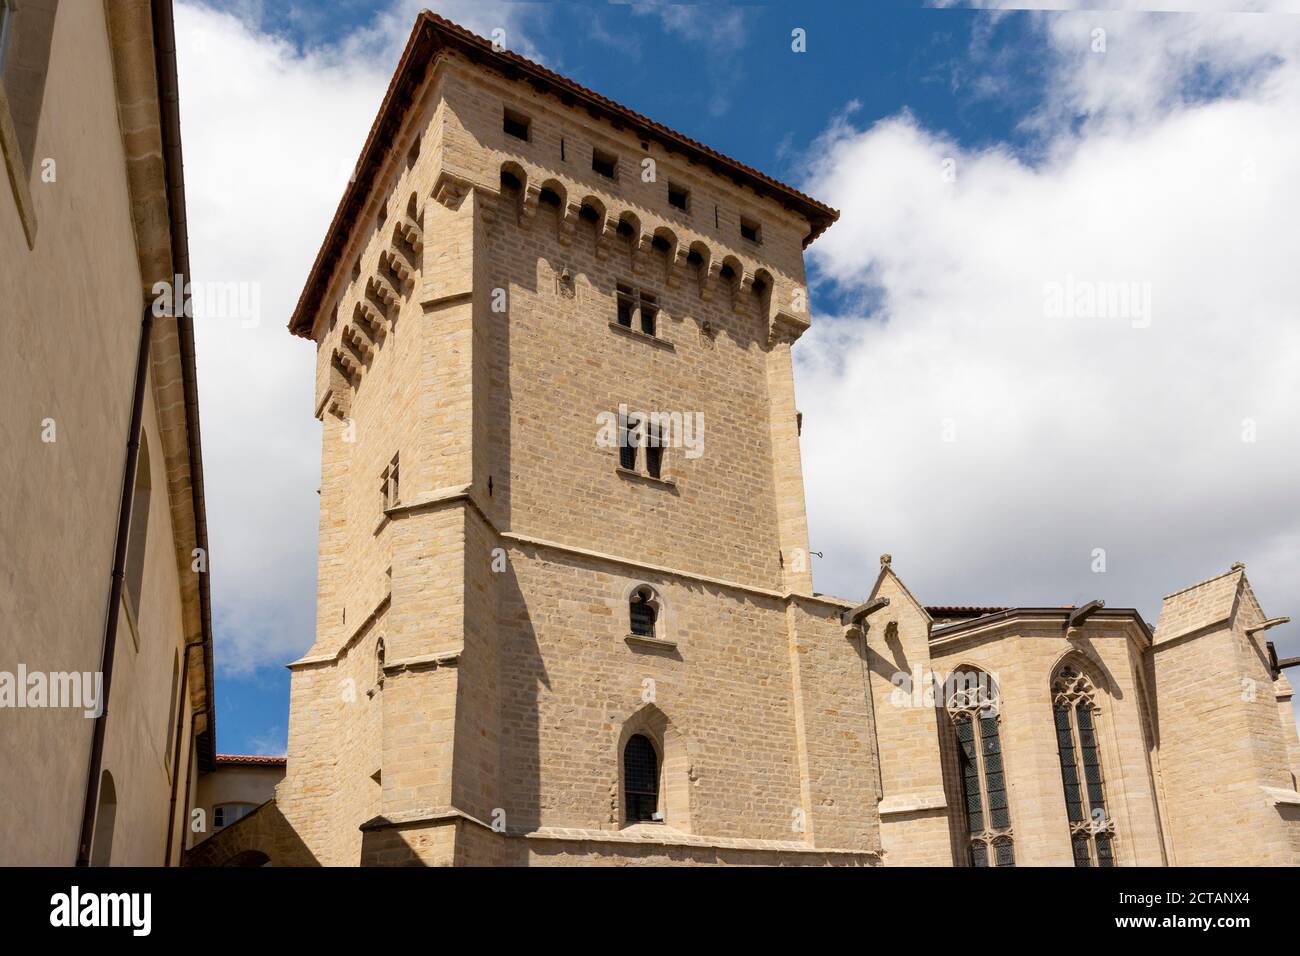 Saint Robert abbey, La Chaise Dieu, Haute Loire department, Auvergne-Rhone-Alpes, France Stock Photo